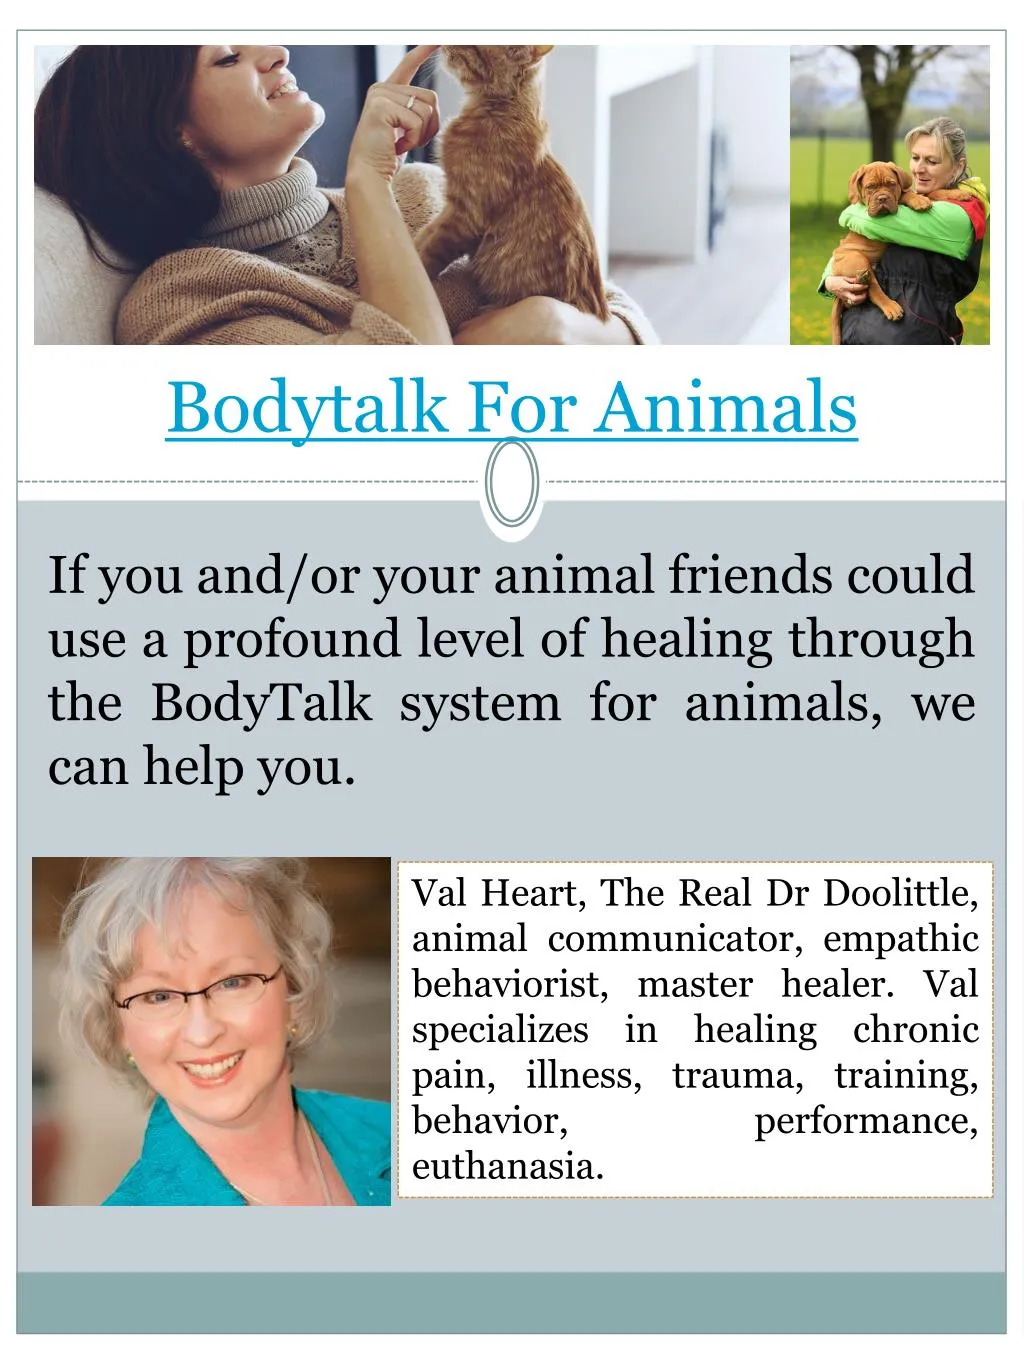 bodytalk for animals